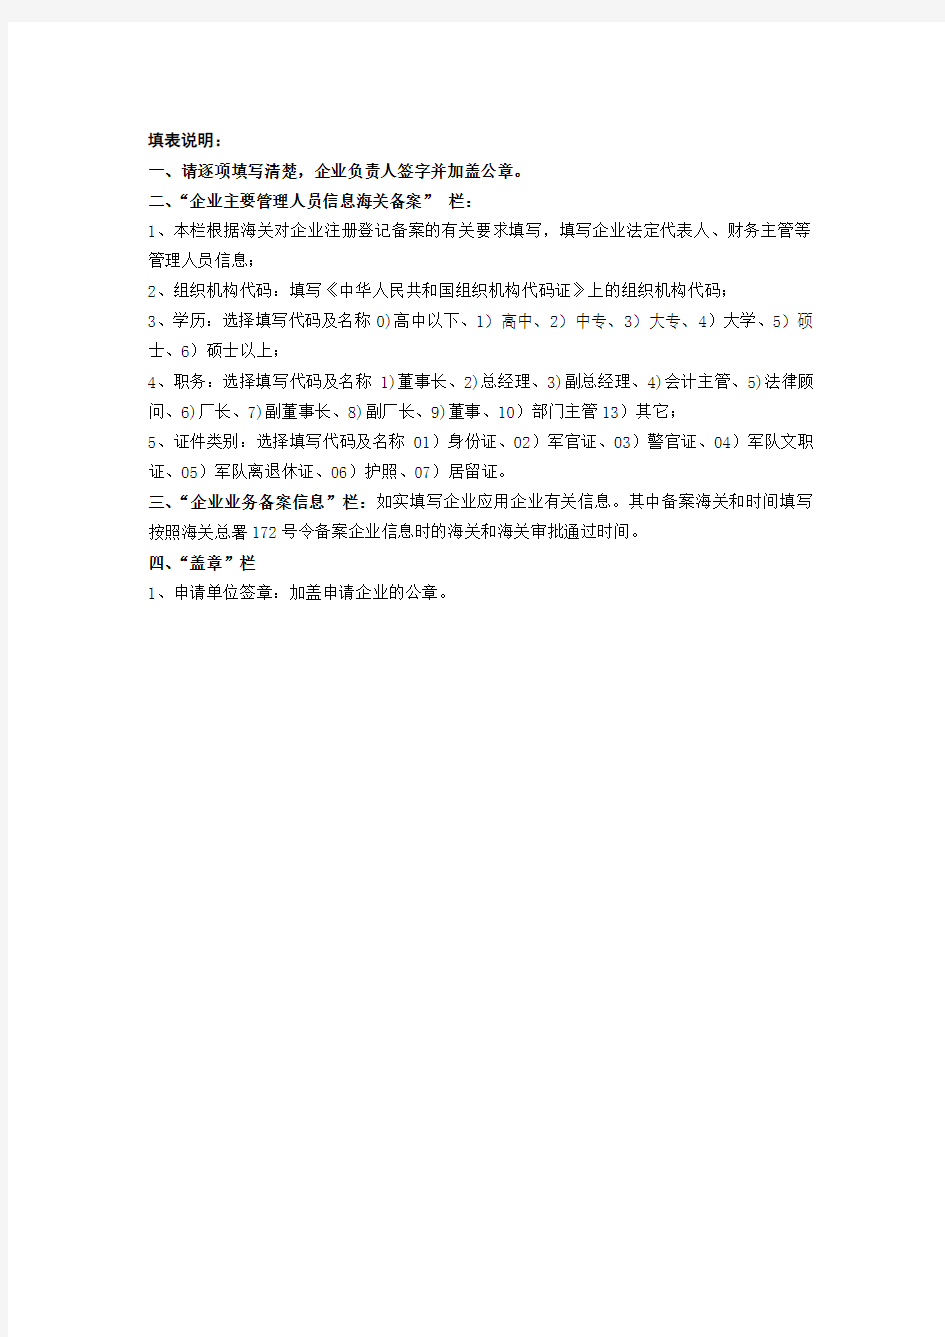 中国电子口岸企业情况登记表